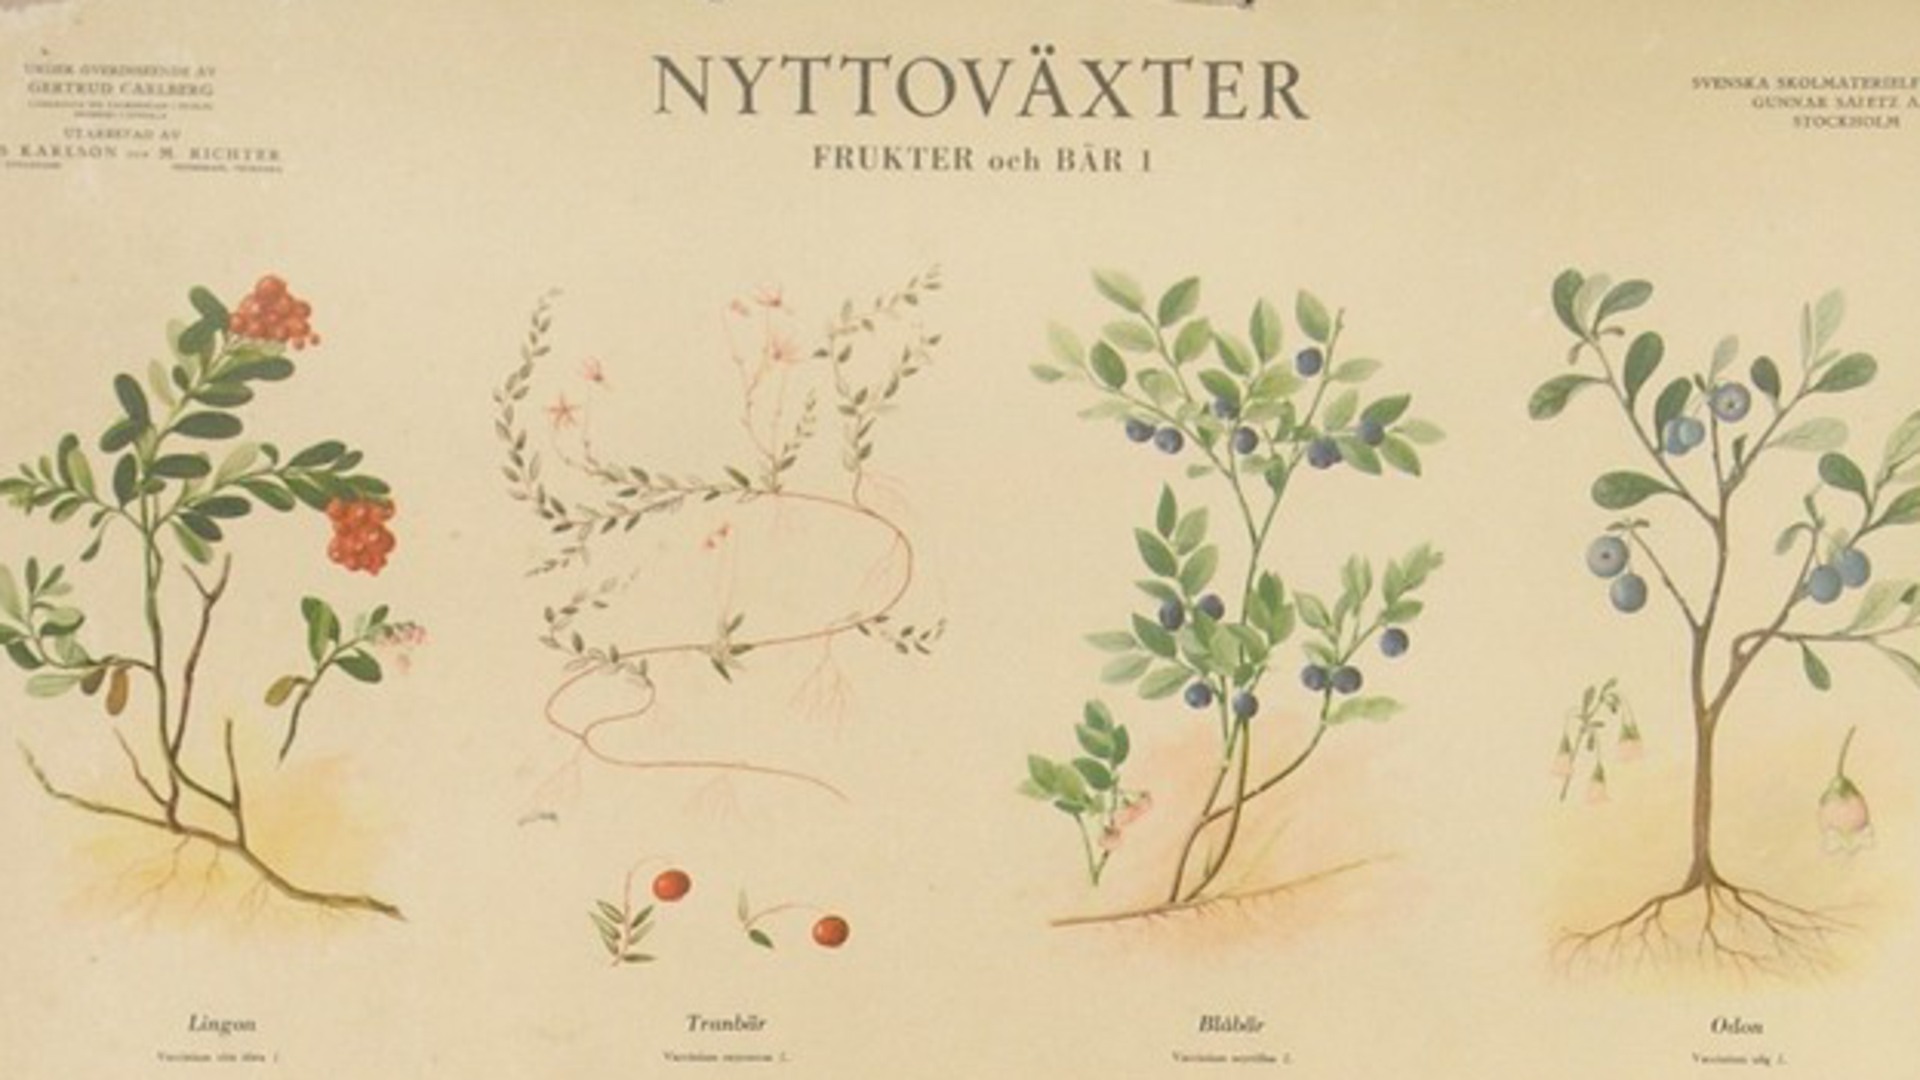 En skolplansch som visar nyttoväxter, bland annat lingon, tranbär, blåbär och odon. 